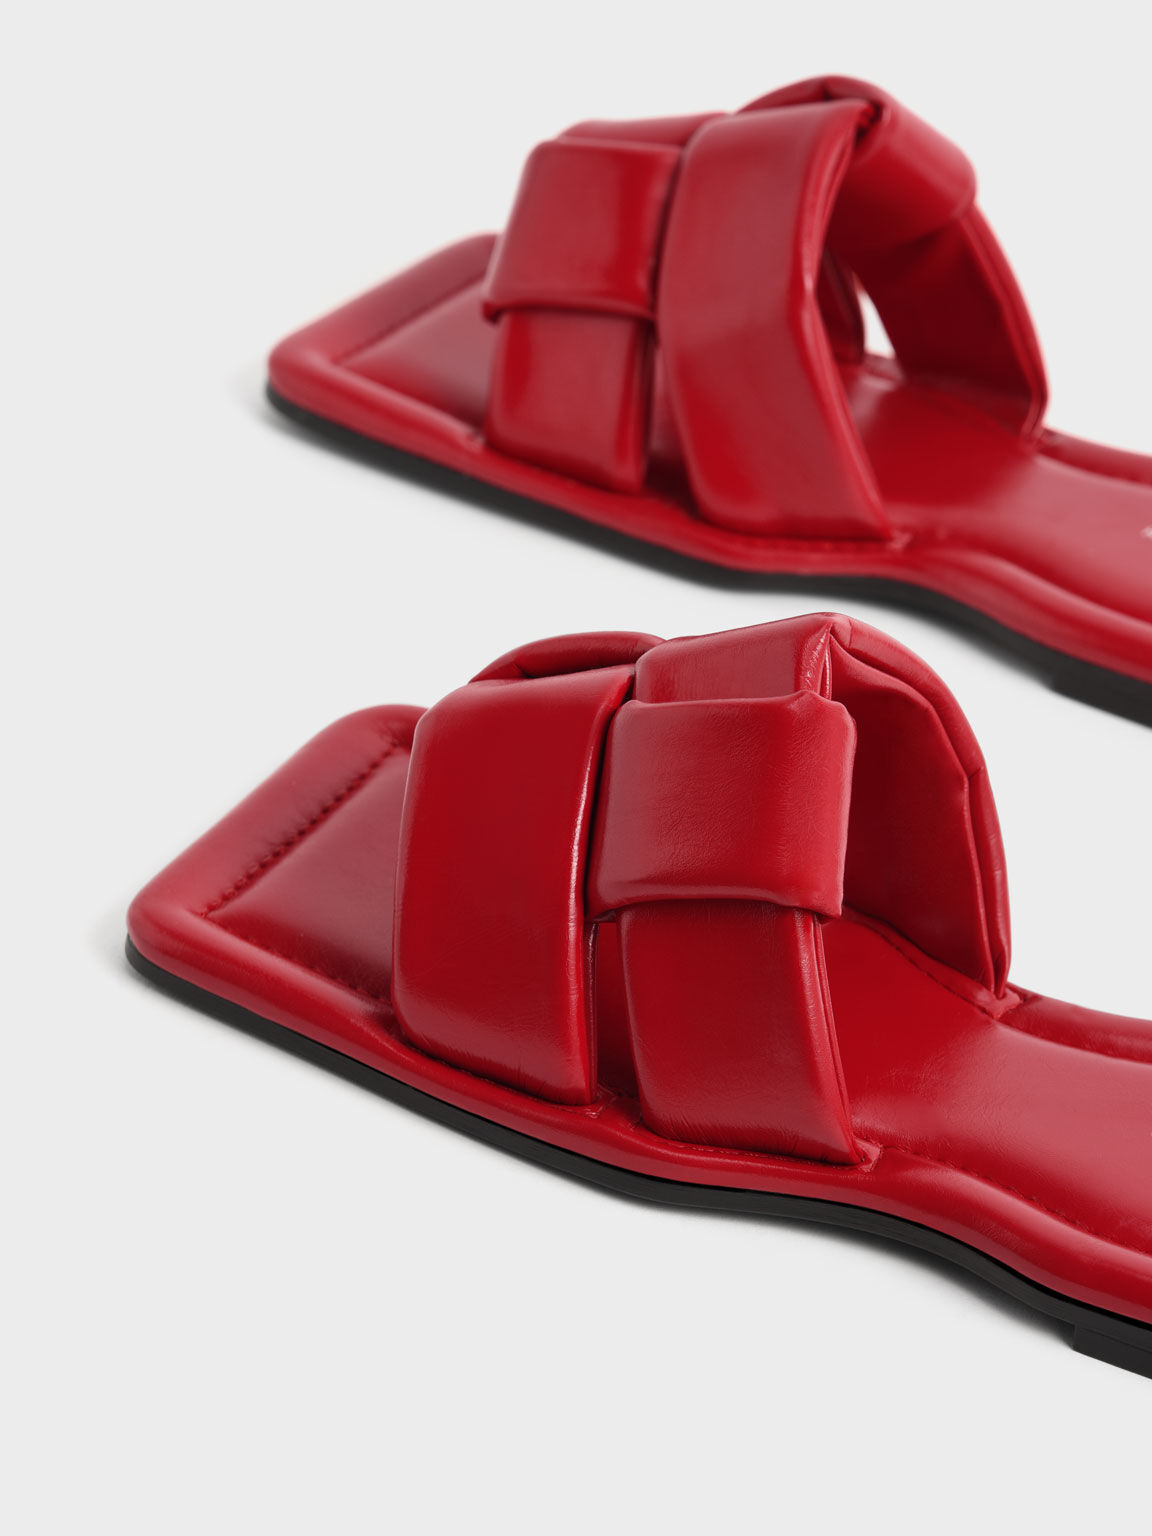 Sandal Slide Interwoven Strap, Red, hi-res